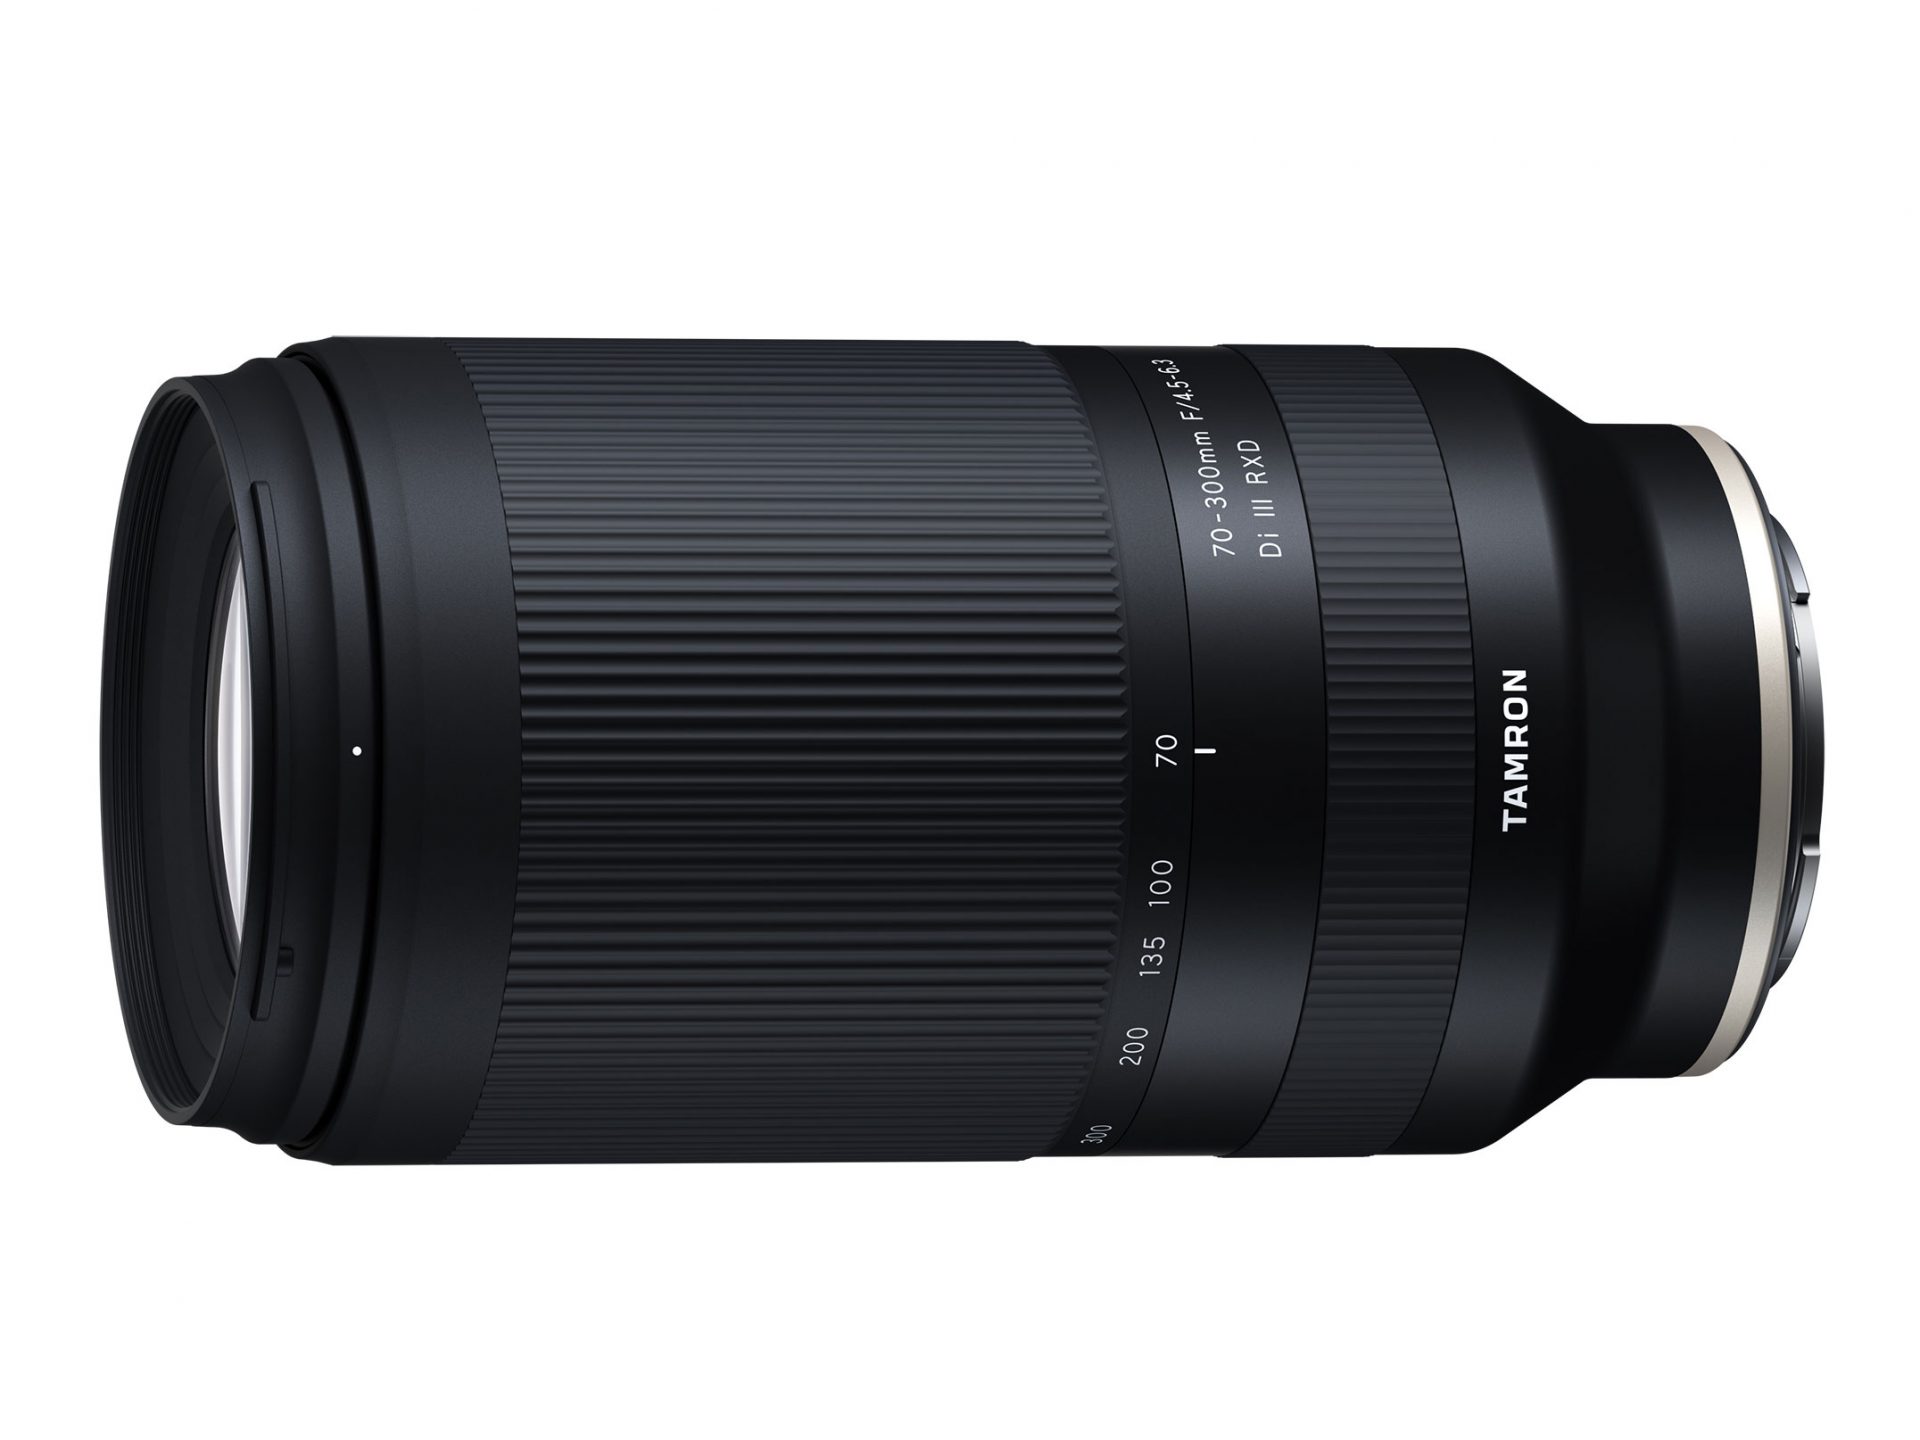 Ống kính Tamron 70-300mm F4.5-6.3 Di III RXD nhỏ gọn cho Sony ngàm E đang được phát triển